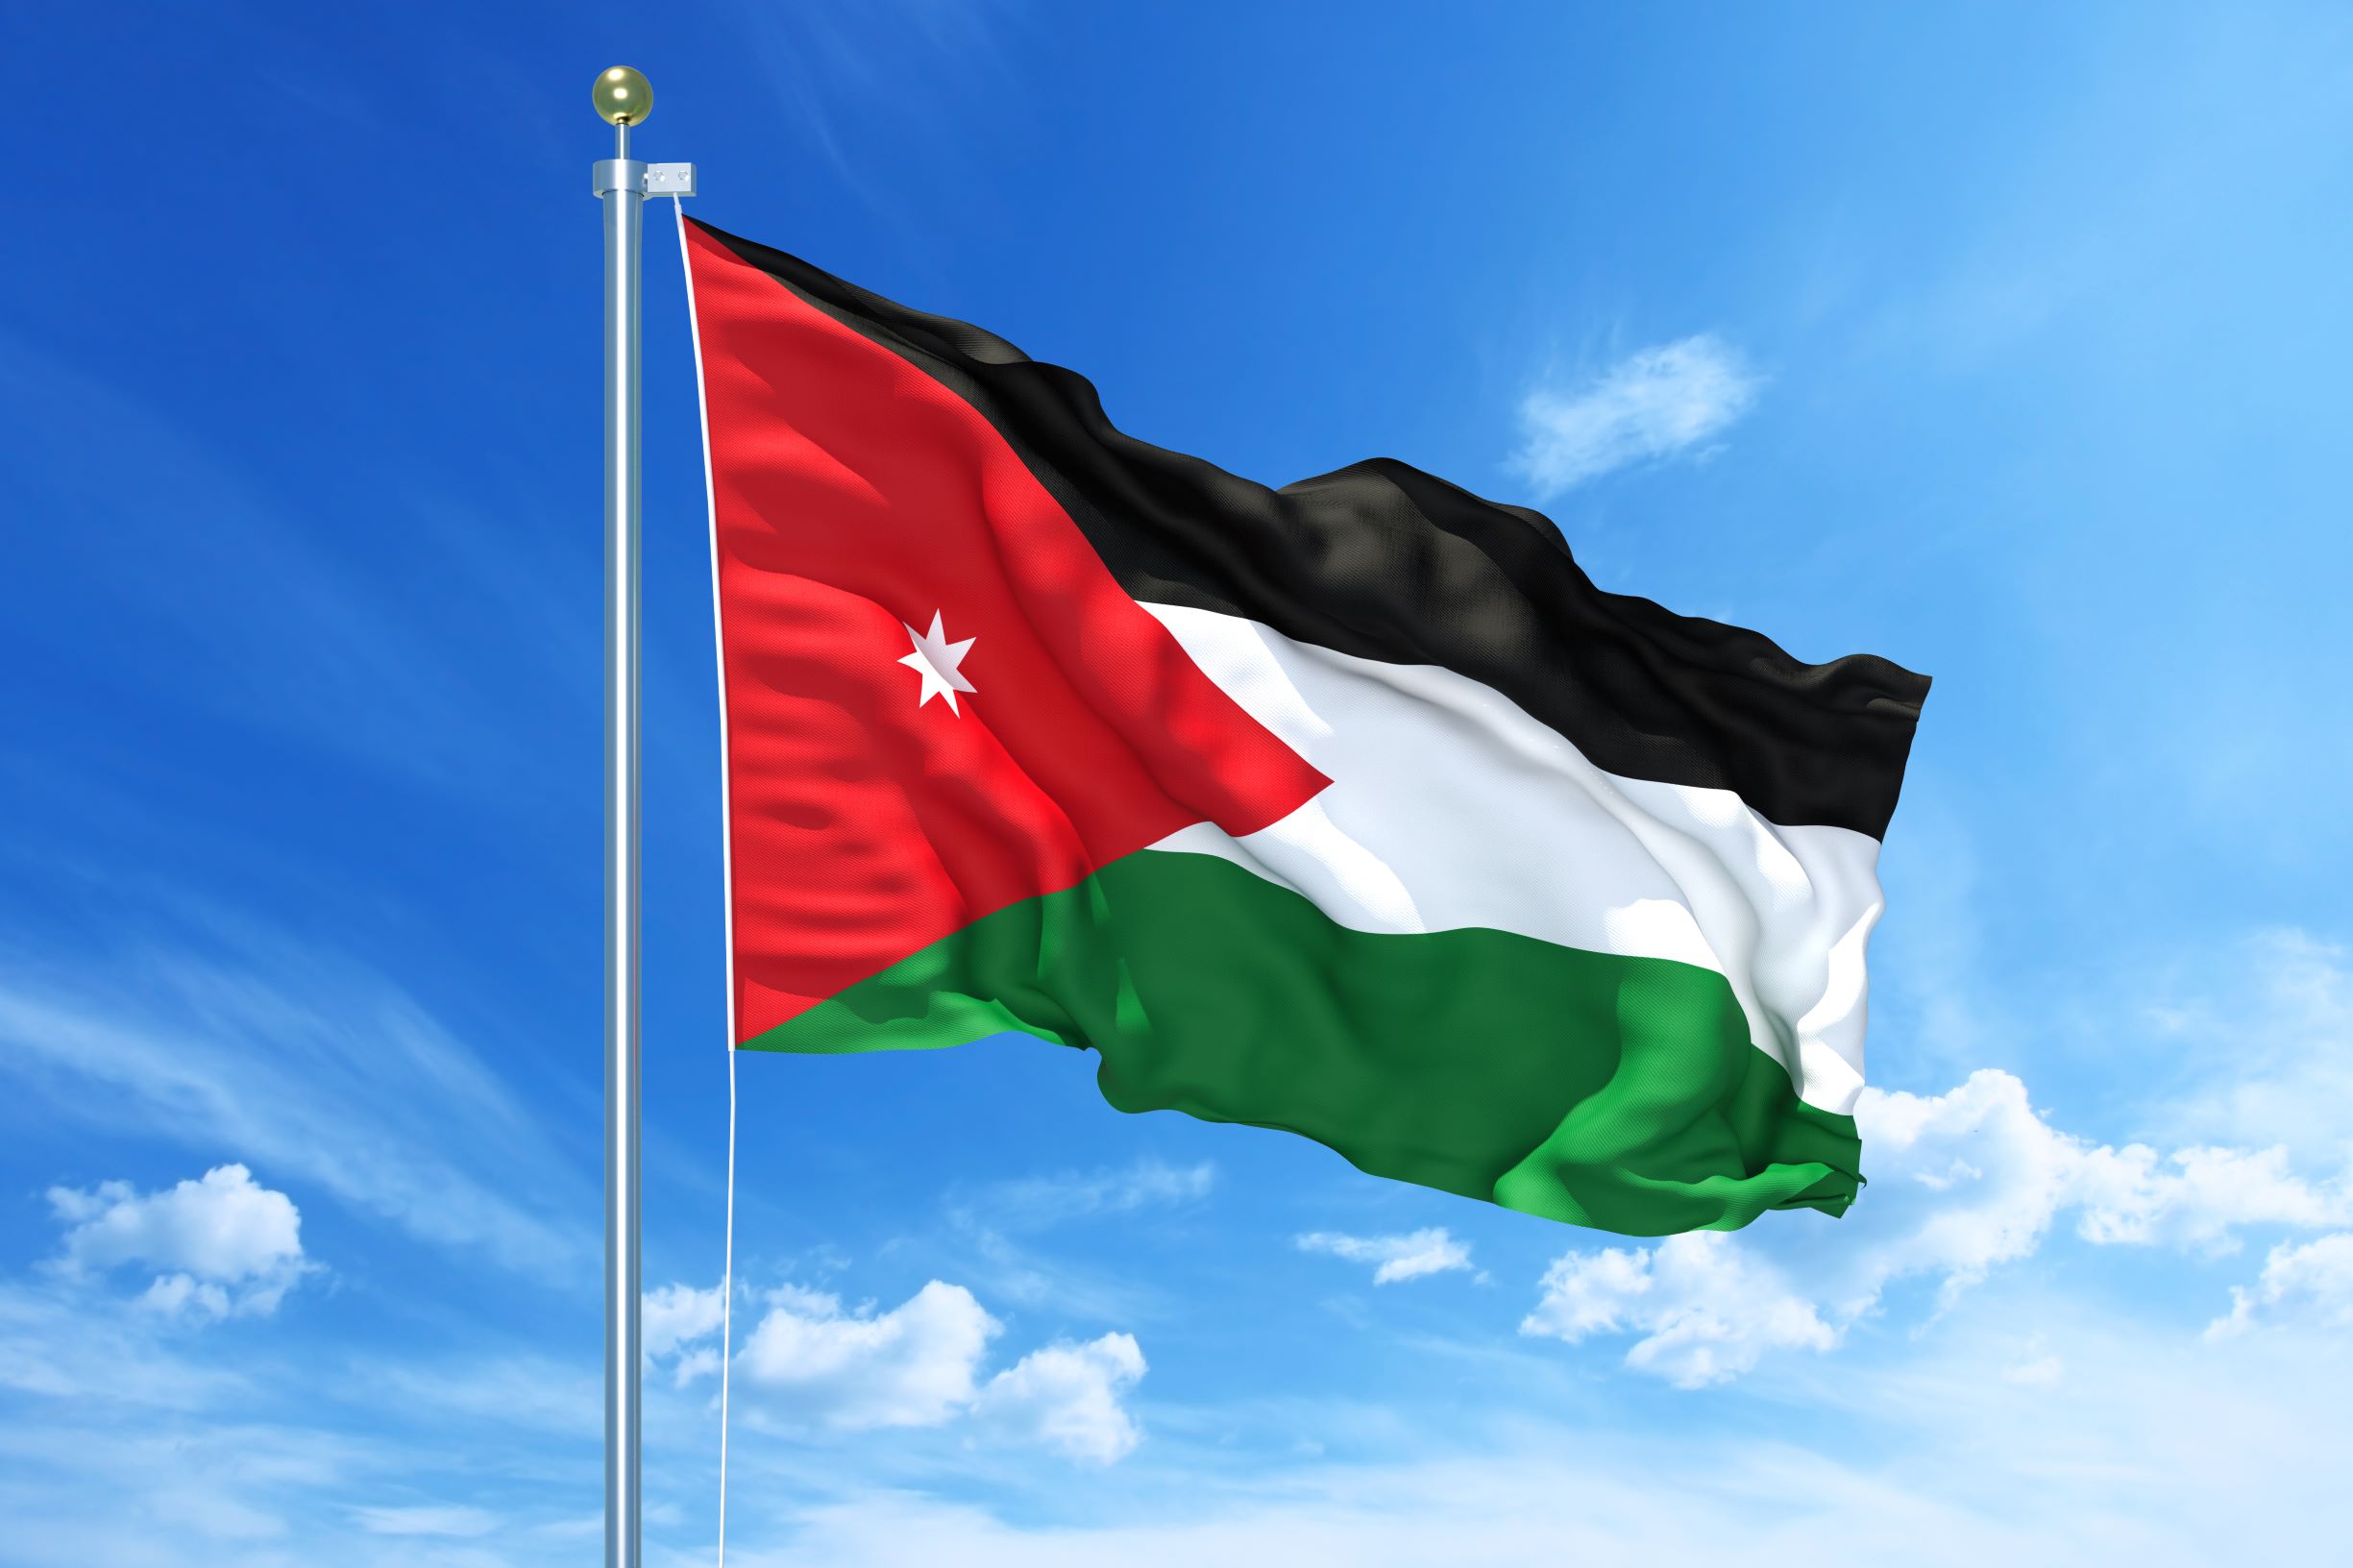 Легализация коммерческих документов для Иордании